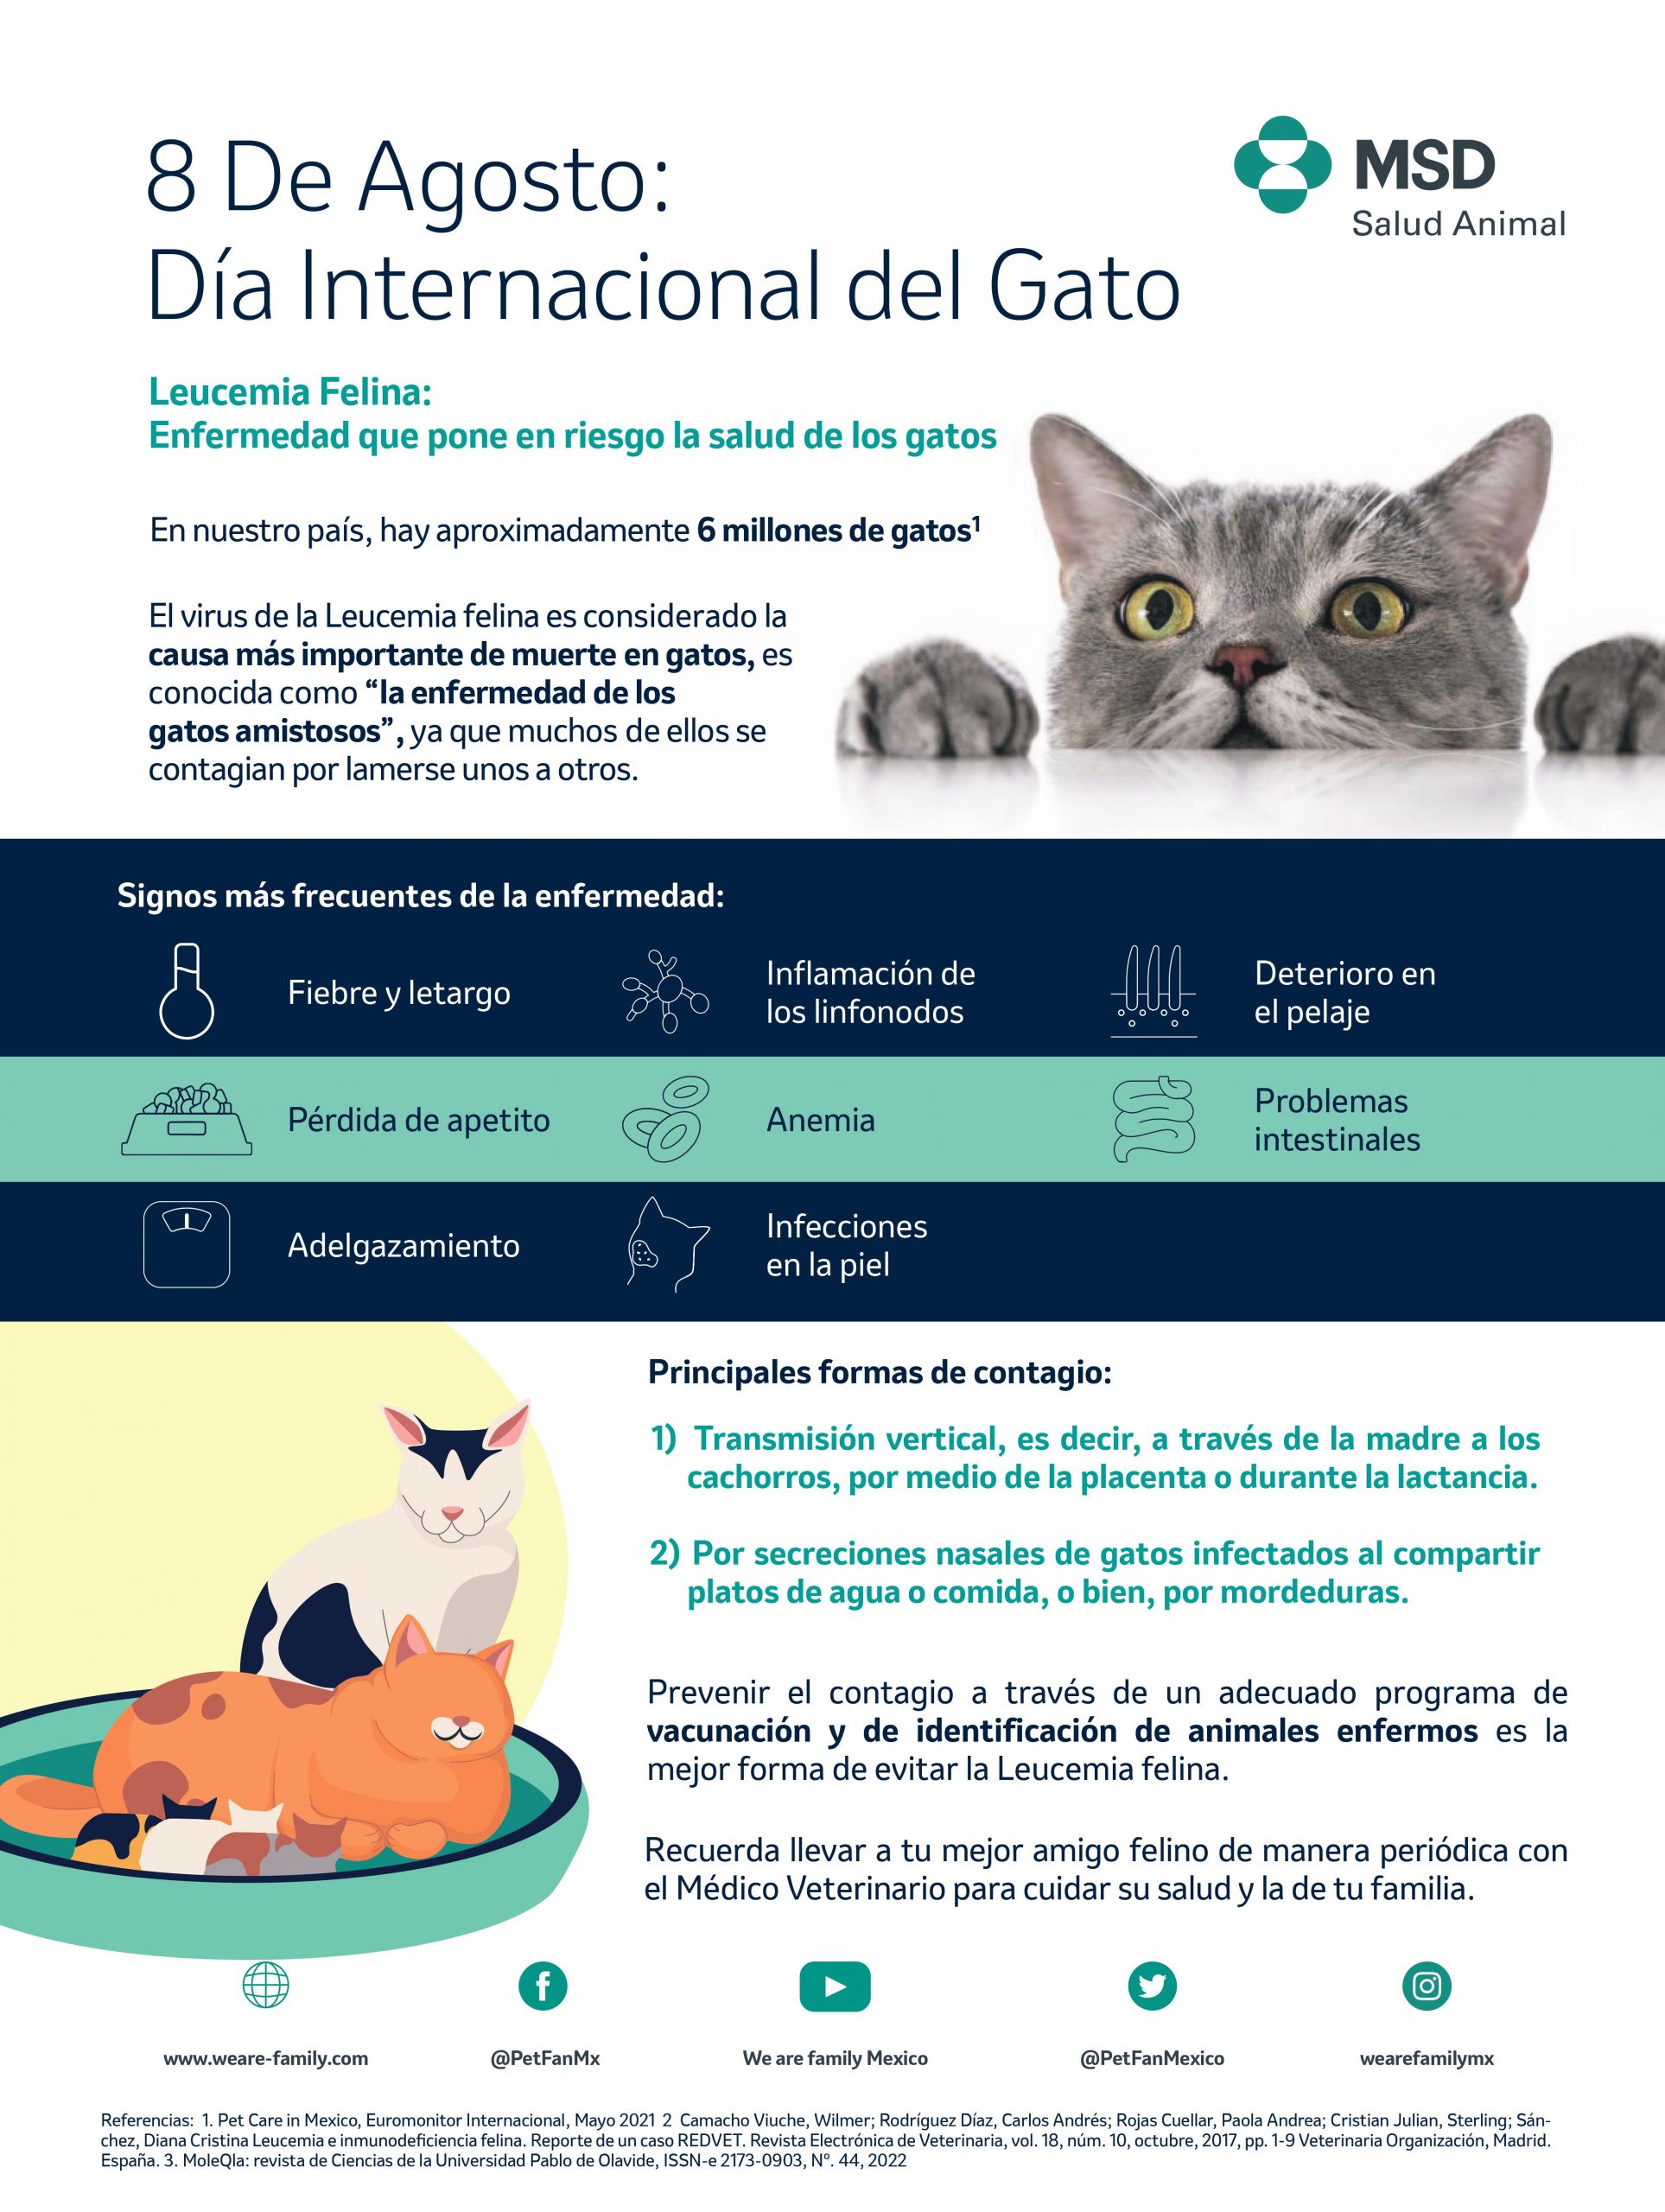 Leucemia felina: enfermedad que pone en riesgo la salud de los gatos